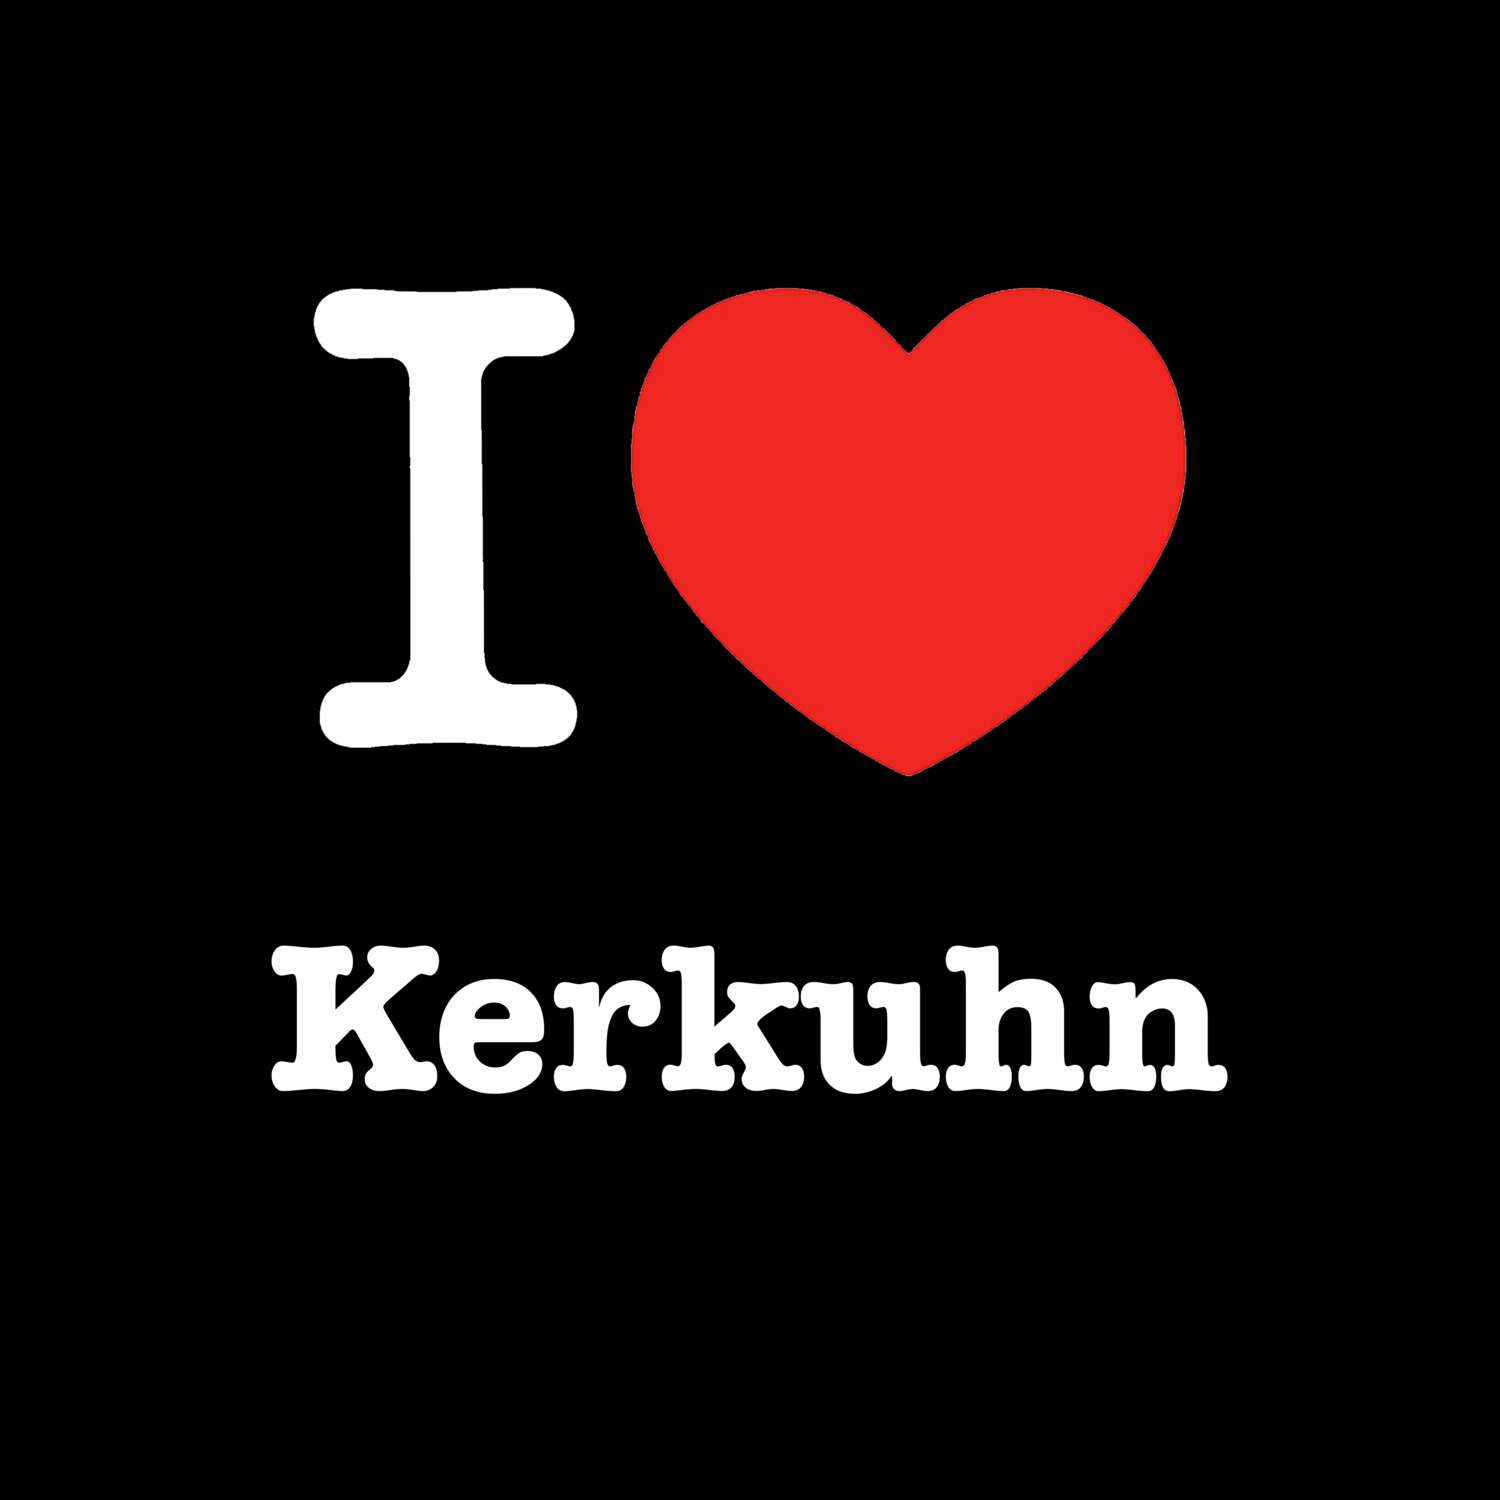 Kerkuhn T-Shirt »I love«